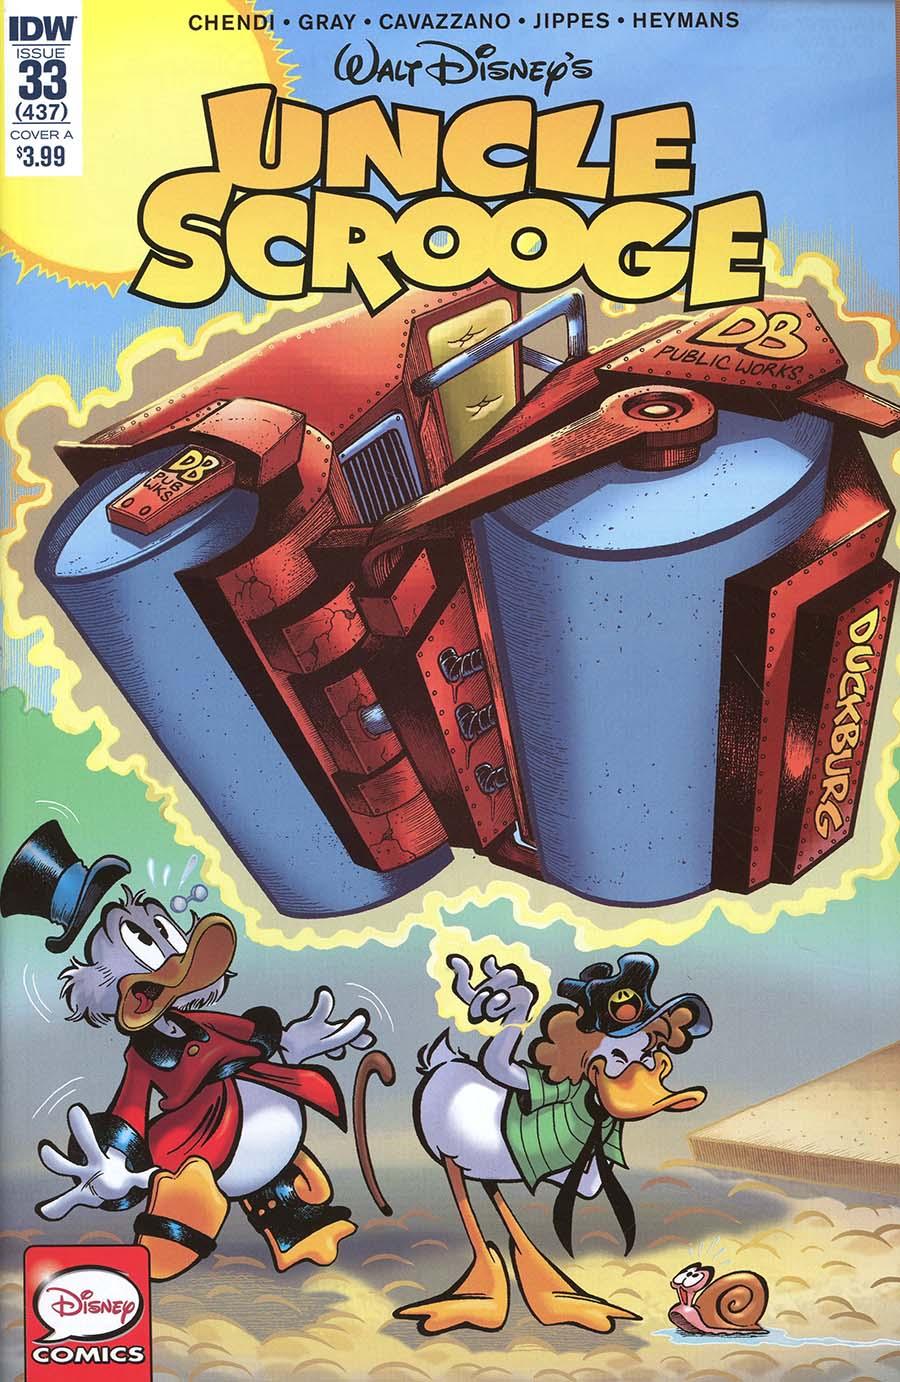 Uncle Scrooge Vol. 2 #33